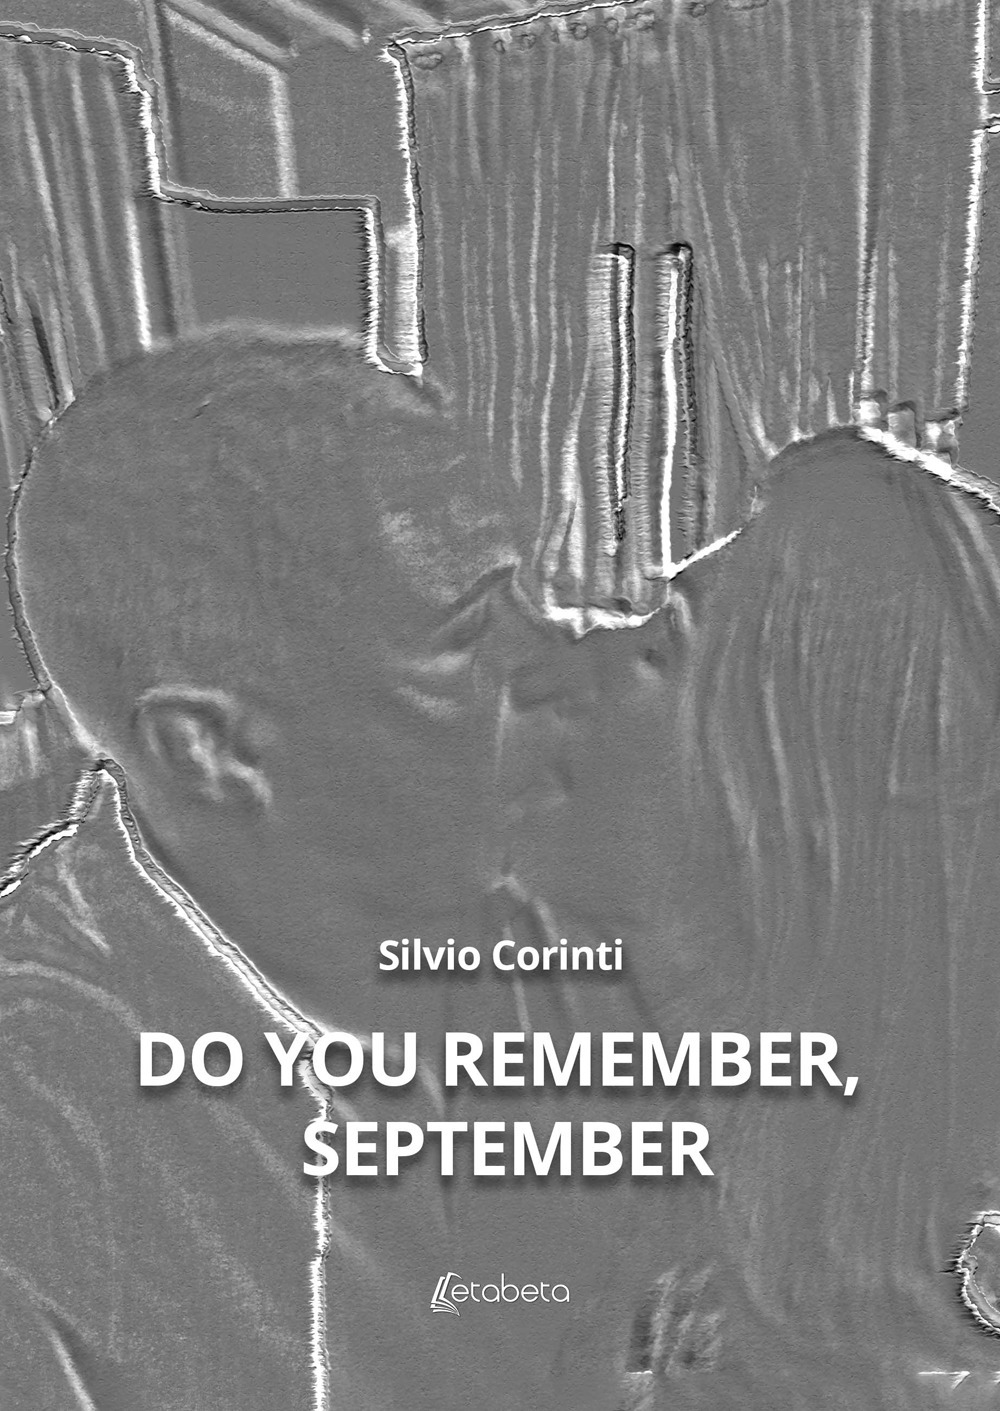 Do you remember, september